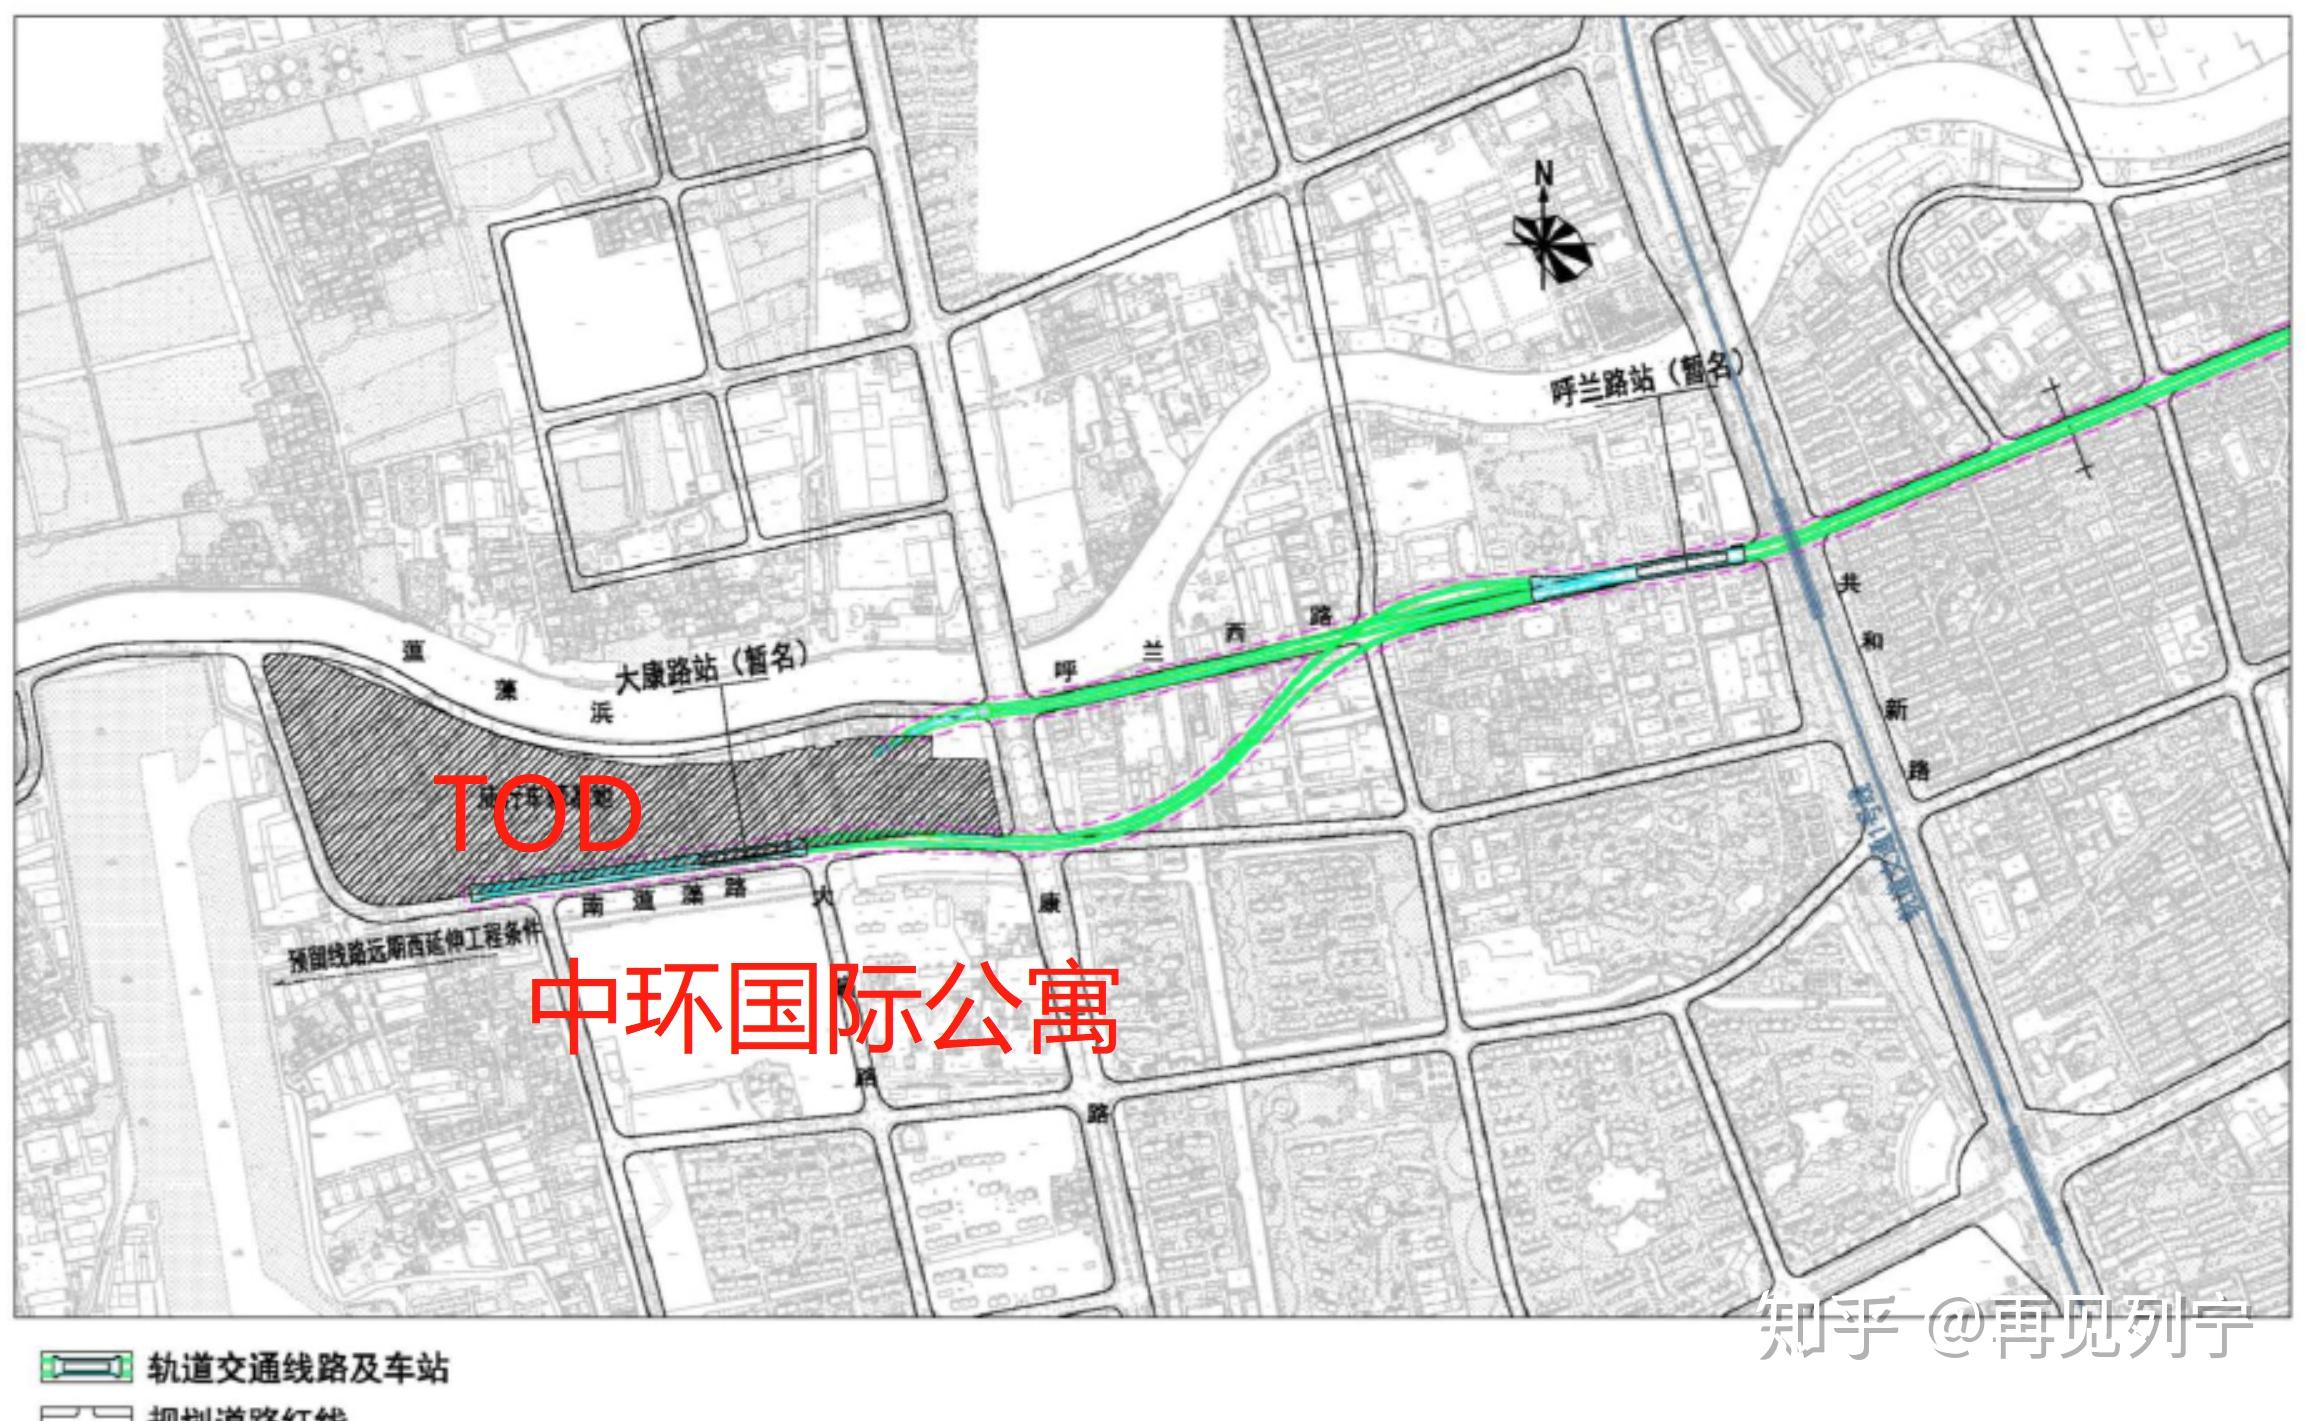 上海18号线二期线路图片